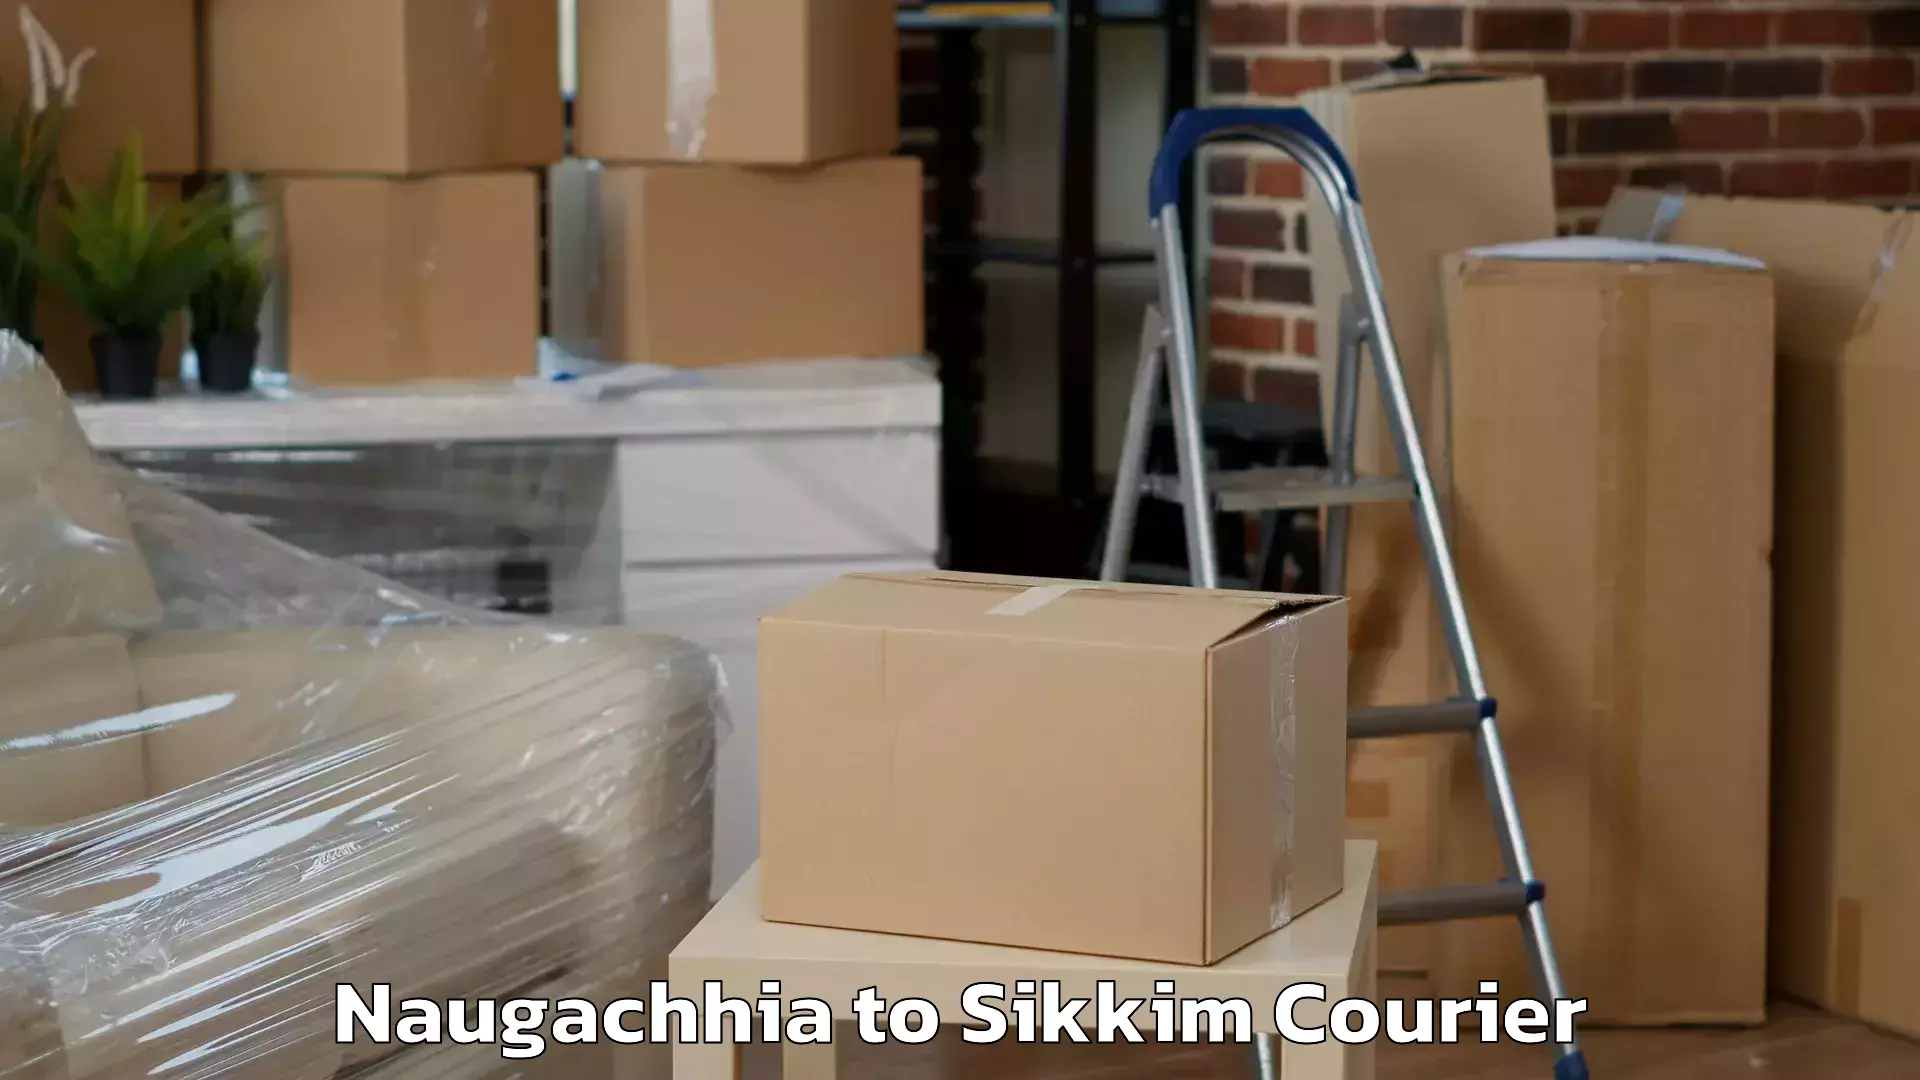 24/7 shipping services Naugachhia to Sikkim